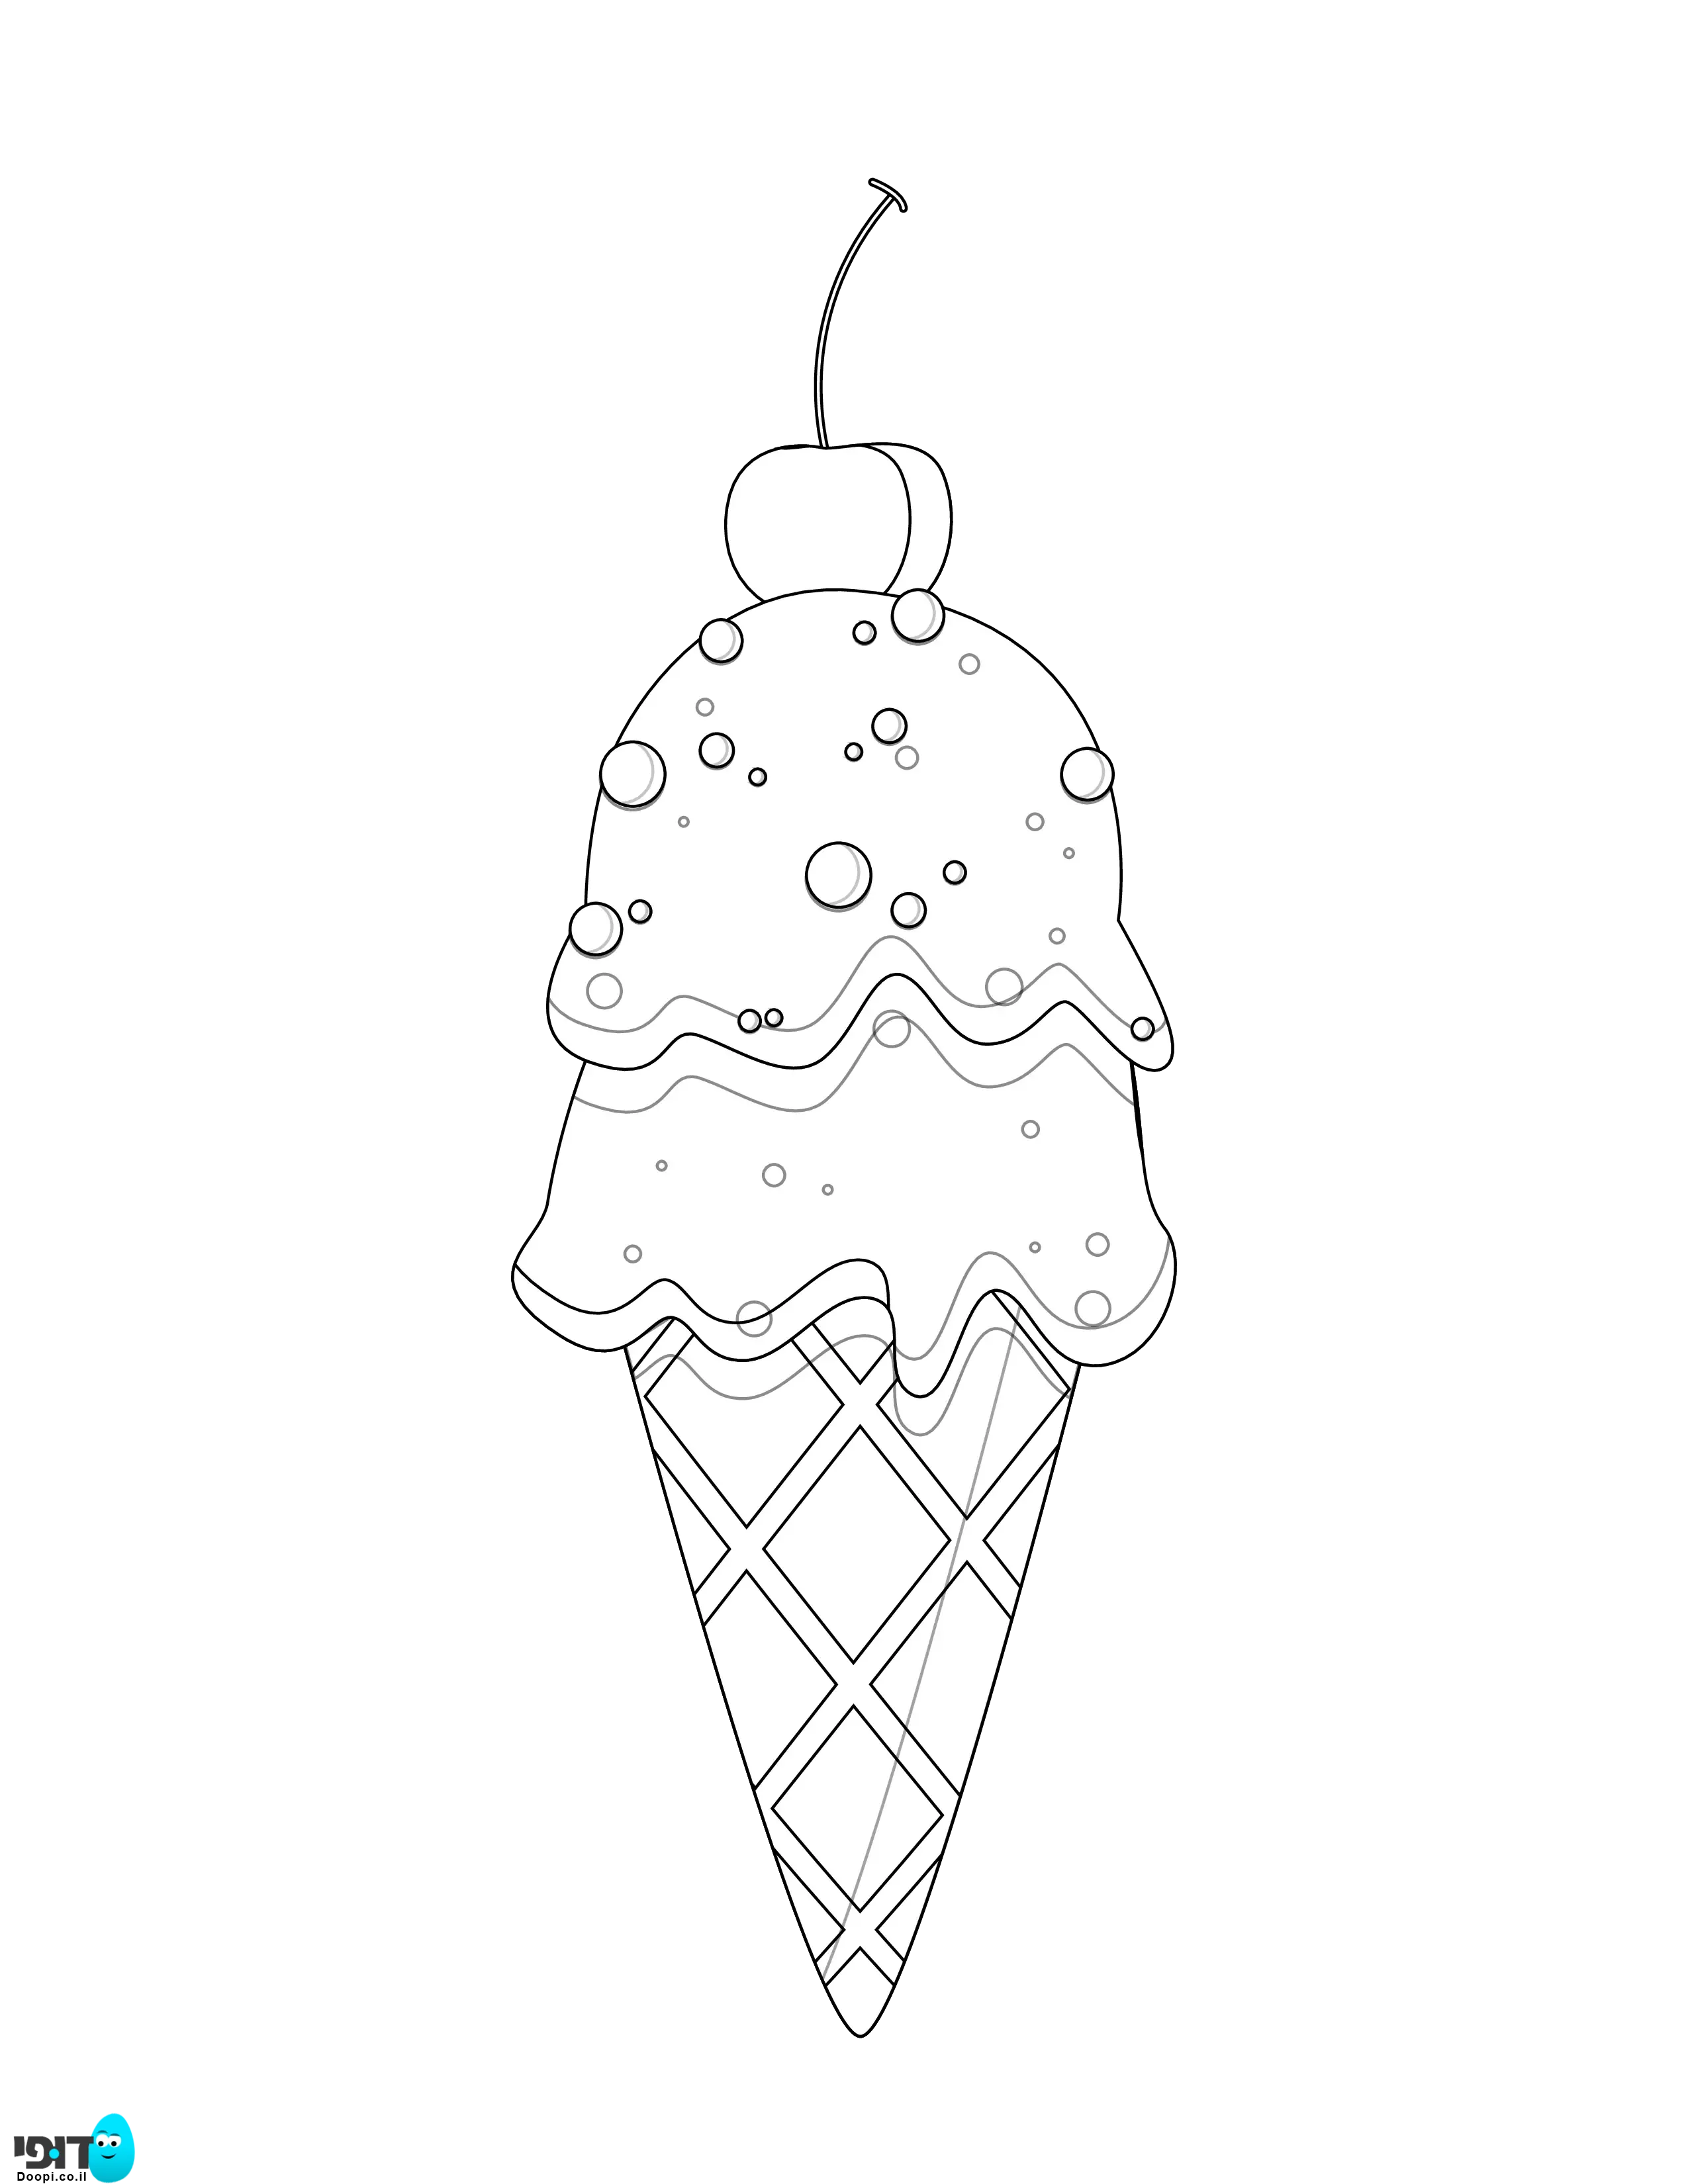 דף צביעה גלידה בגביע